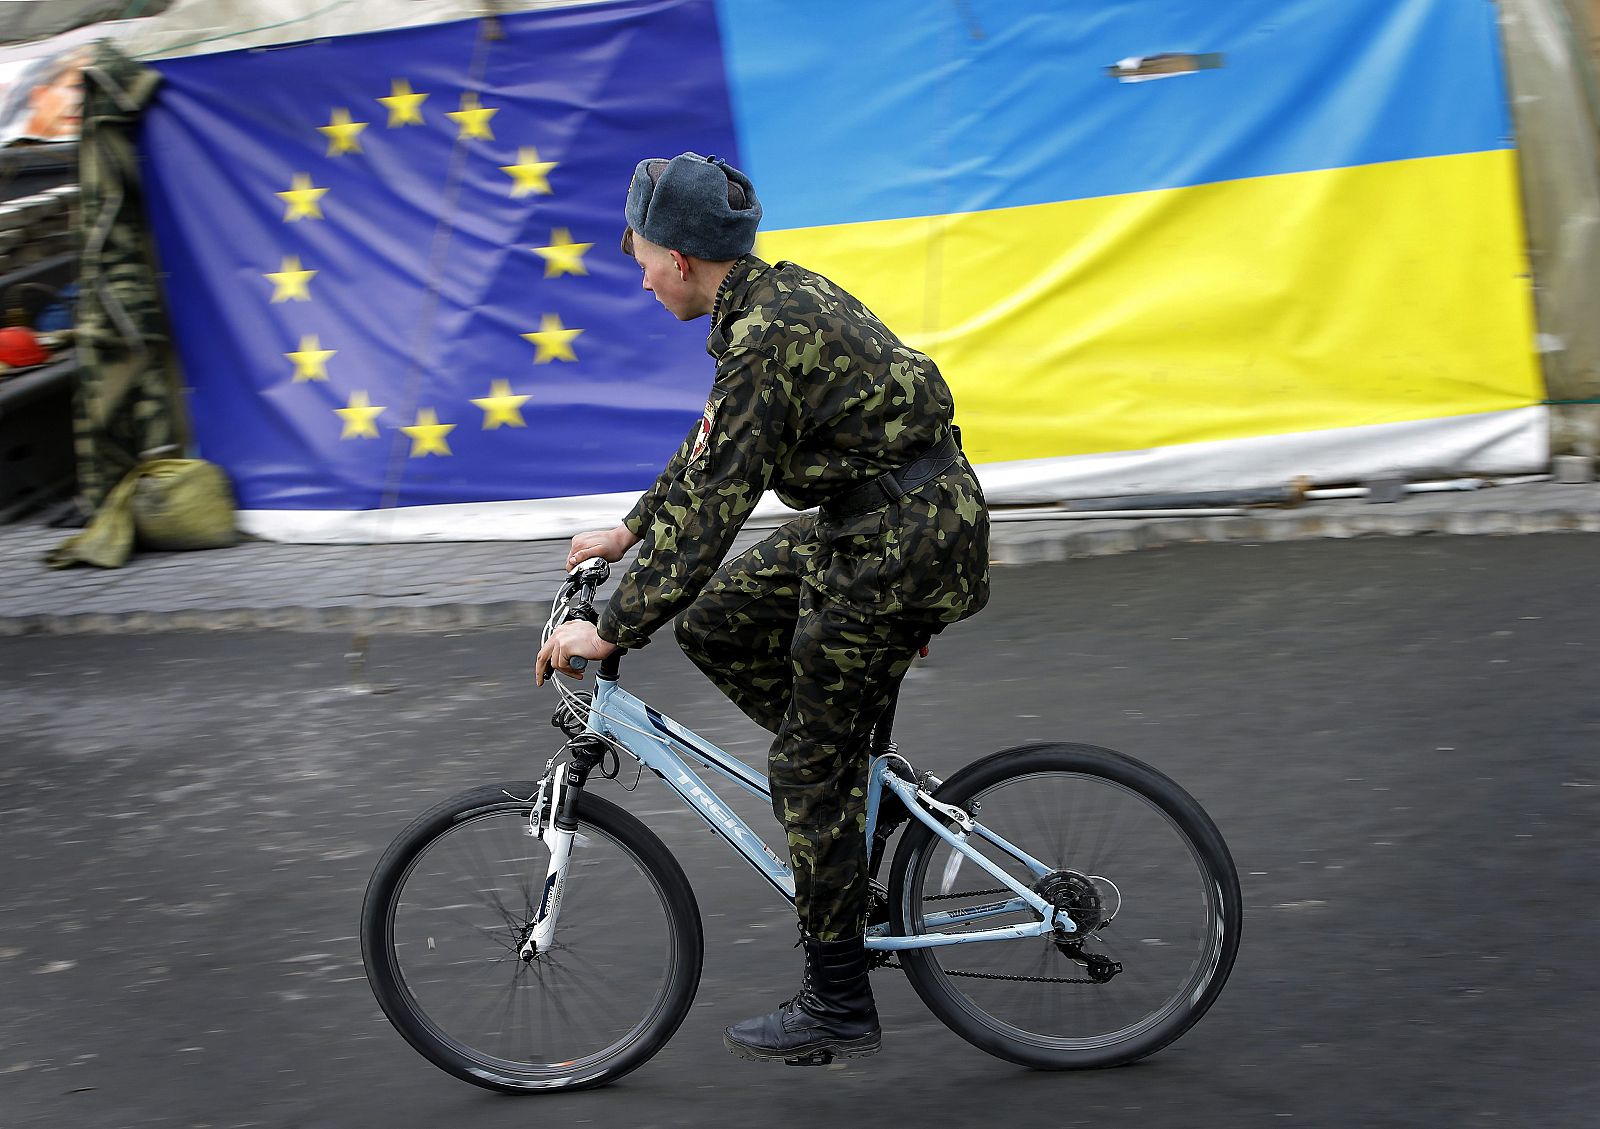 Un miembro de las autodenominadas "defensas" de maidán pasa junto a banderas de la UE y Ucrania